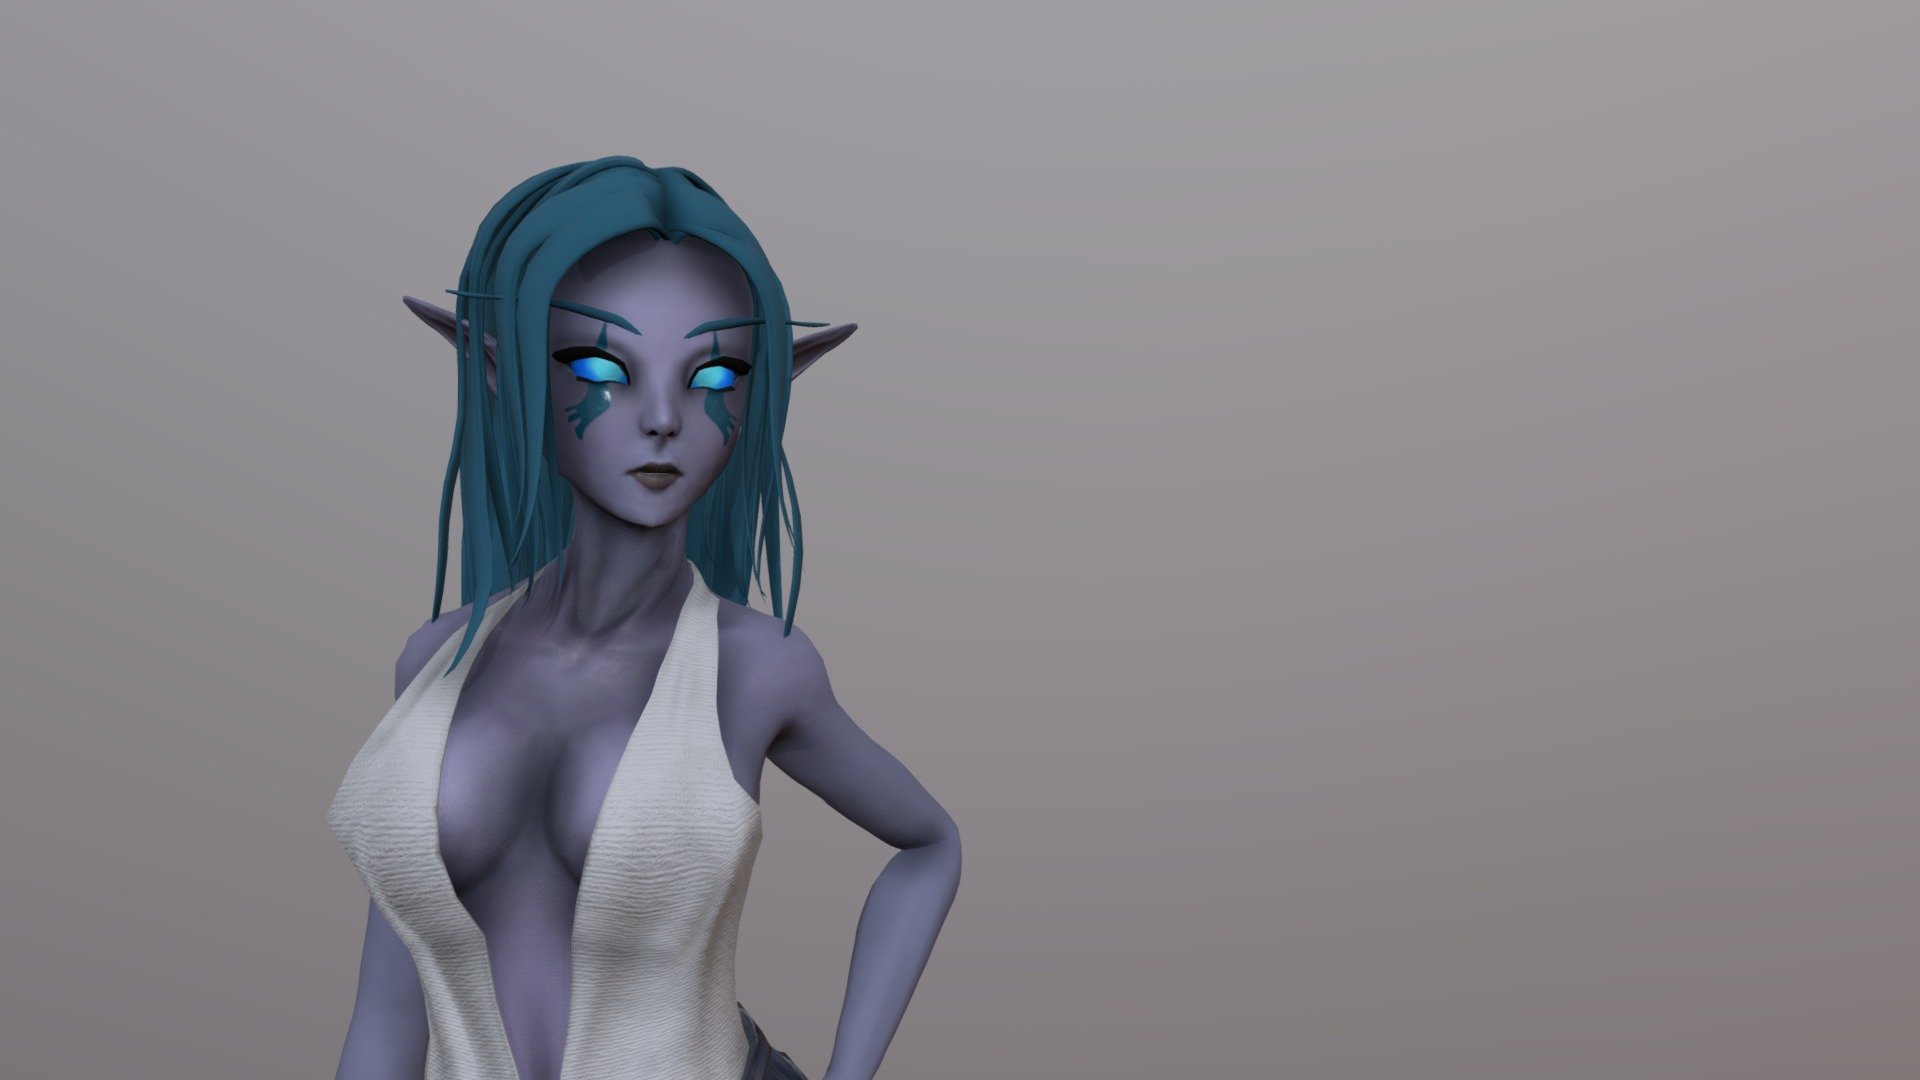 A Dark elf stylized character
follow me on https://www.artstation.com/skami - Lia Darkelf - 3D model by sami-skouri 3d model